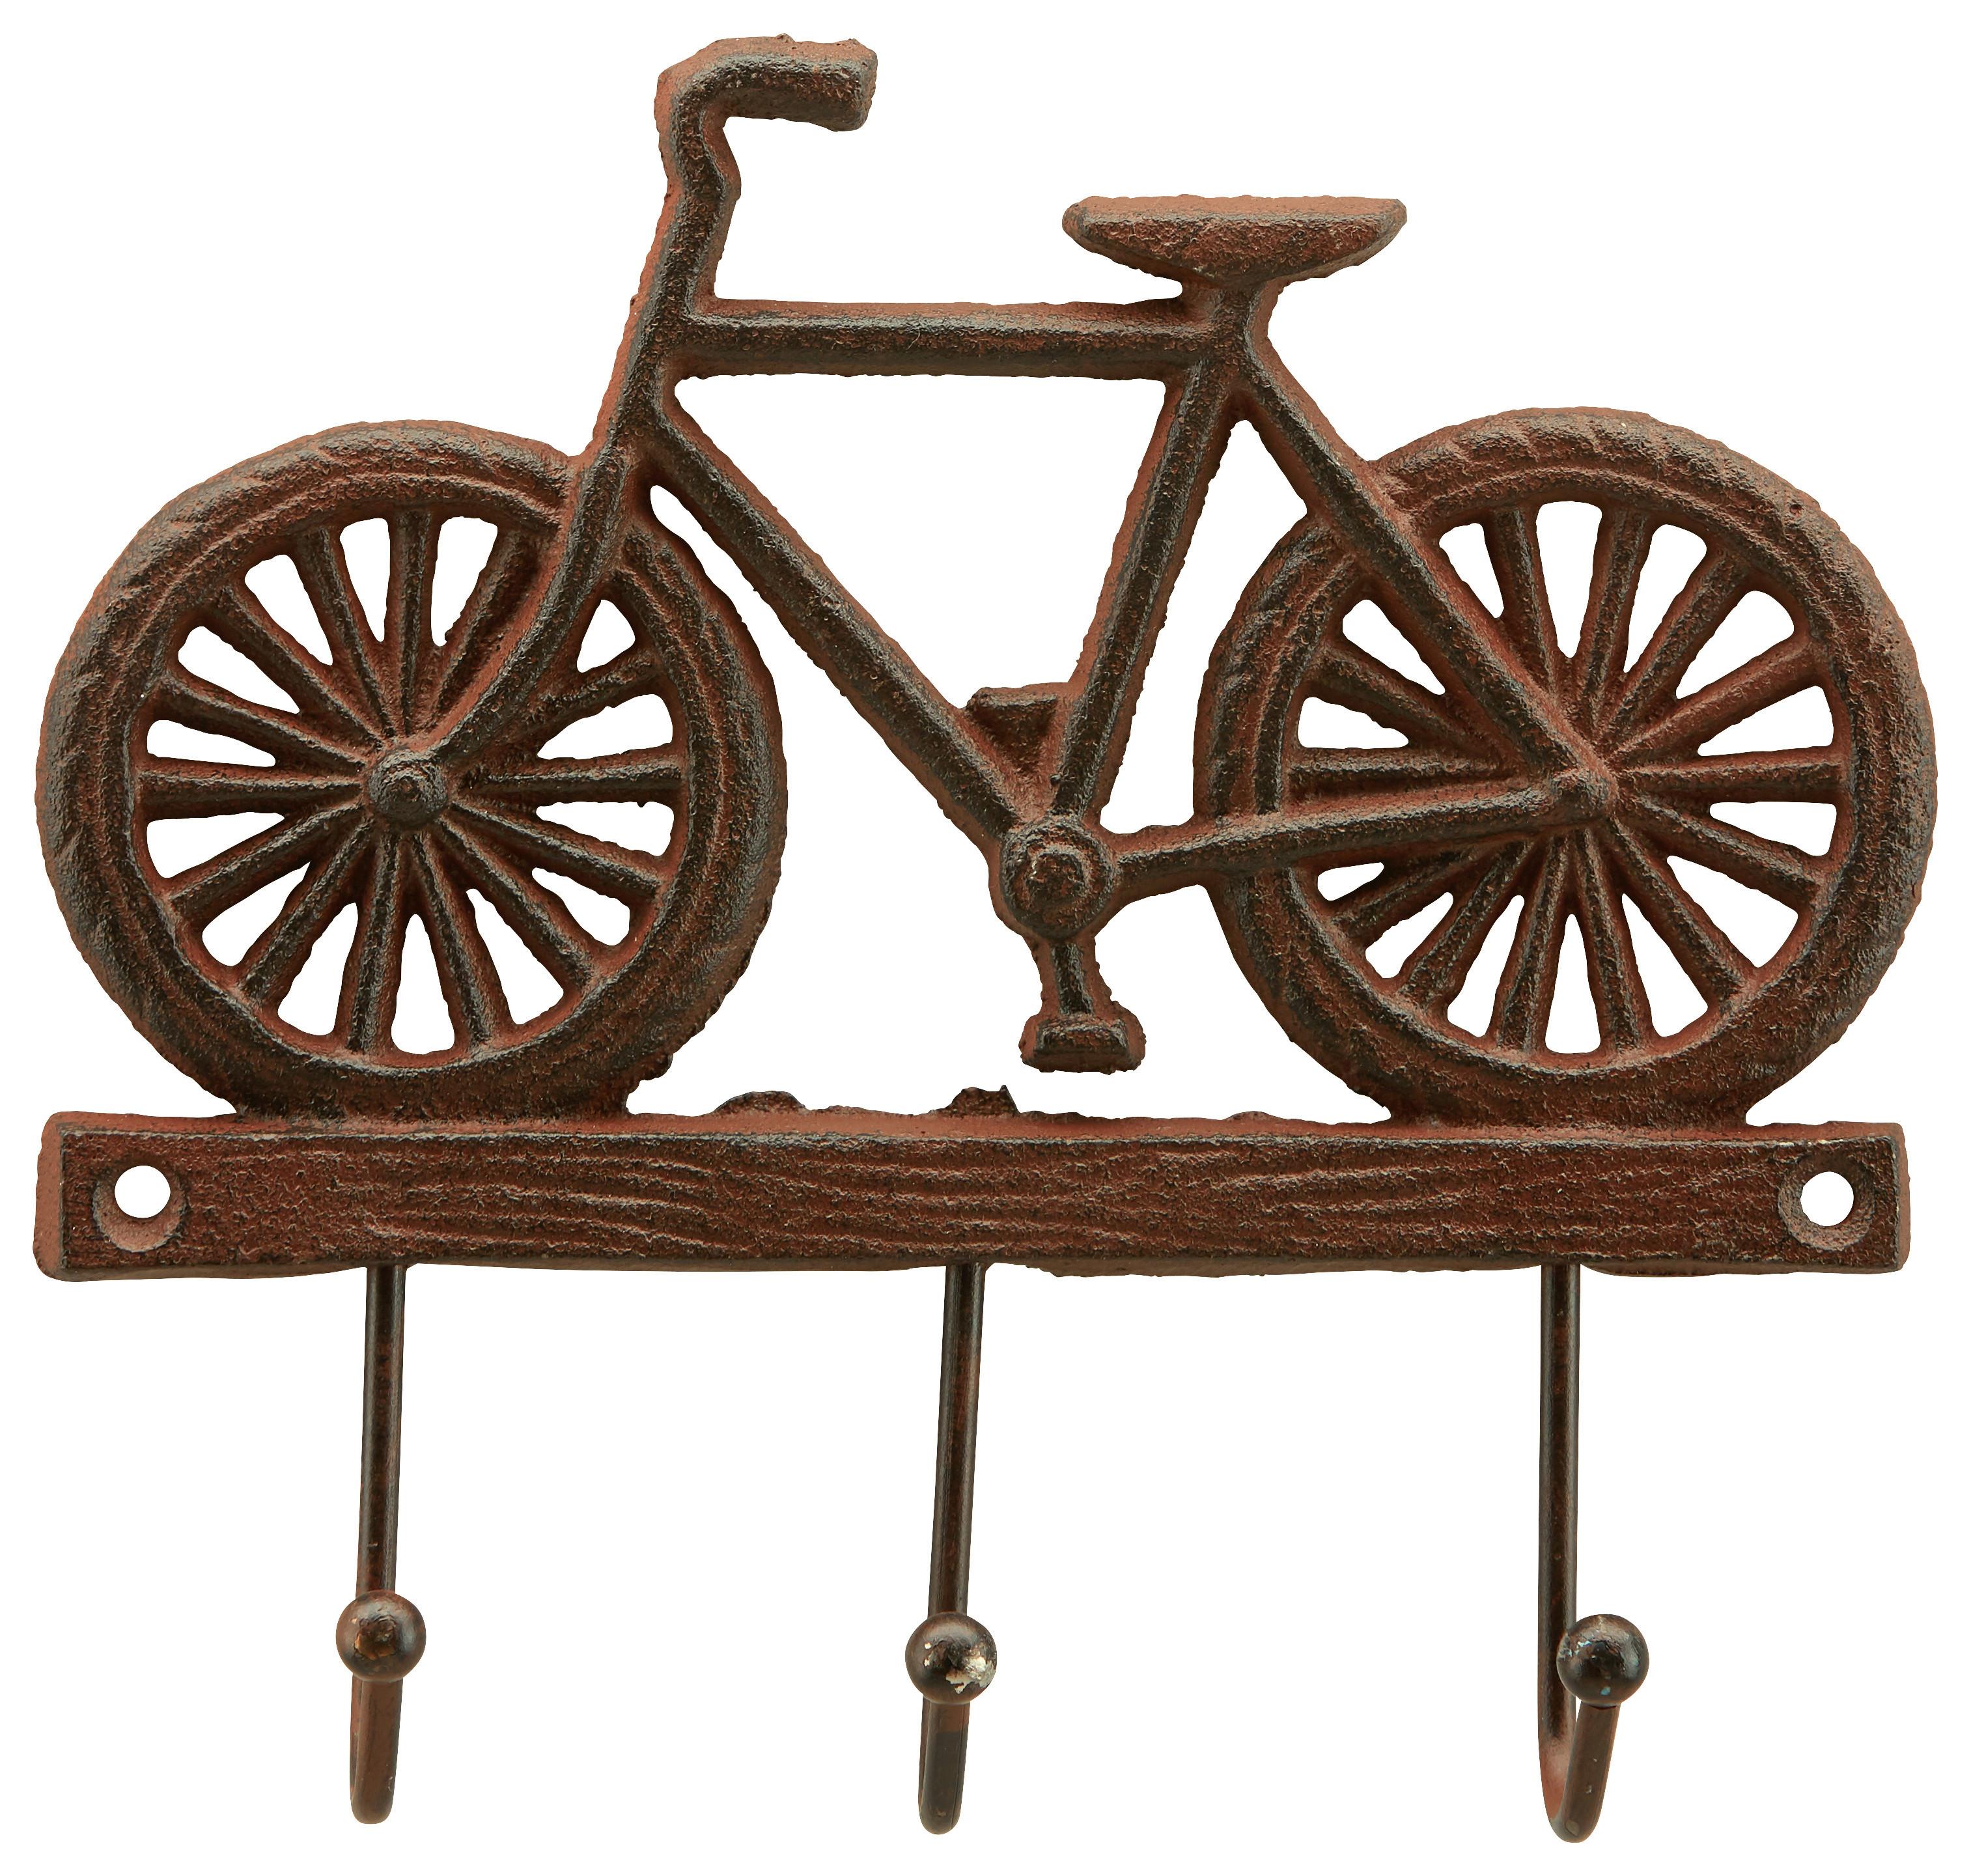 Lišta S Háčky Bike - hnědá, Romantický / Rustikální, kov (20/20/3cm) - Modern Living